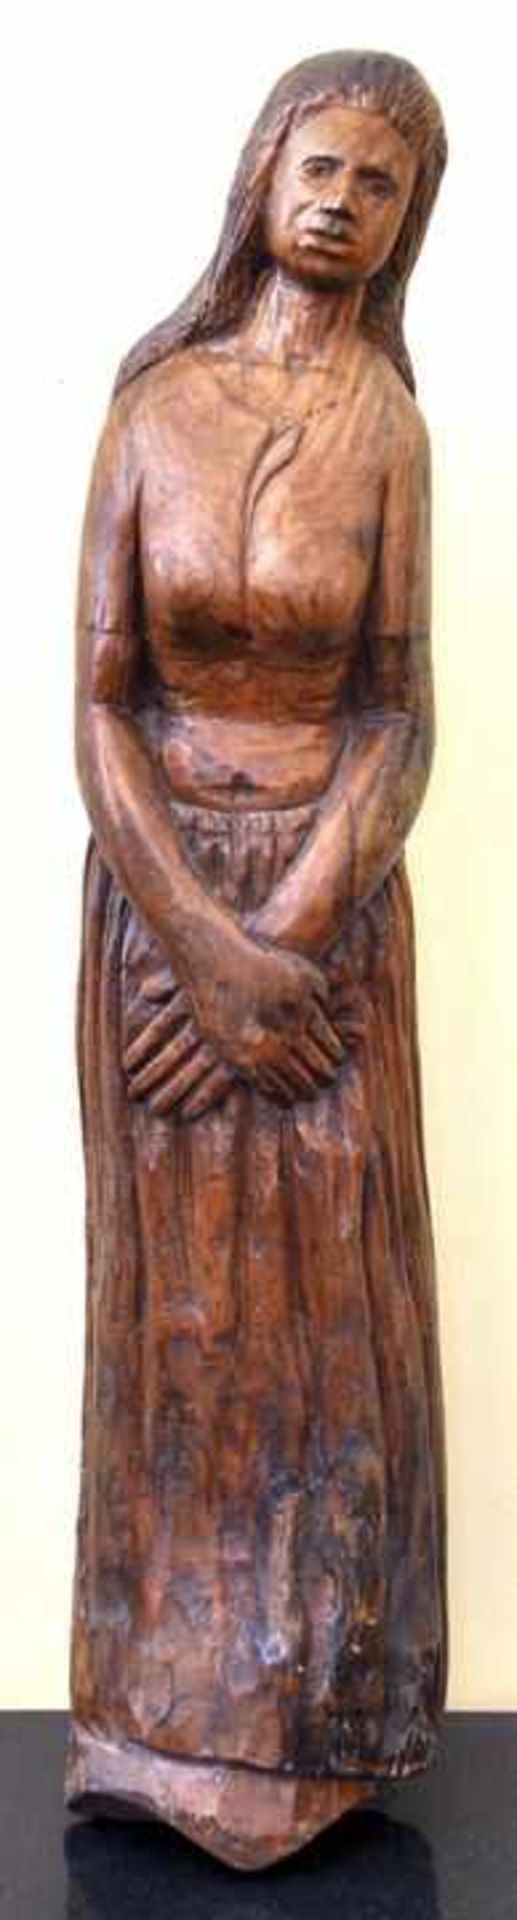 Unbekannter Künstler, Indien/ Südostasien, 2. H. 20. Jh. Weibliche Figur. Holz, geschnitzt, am